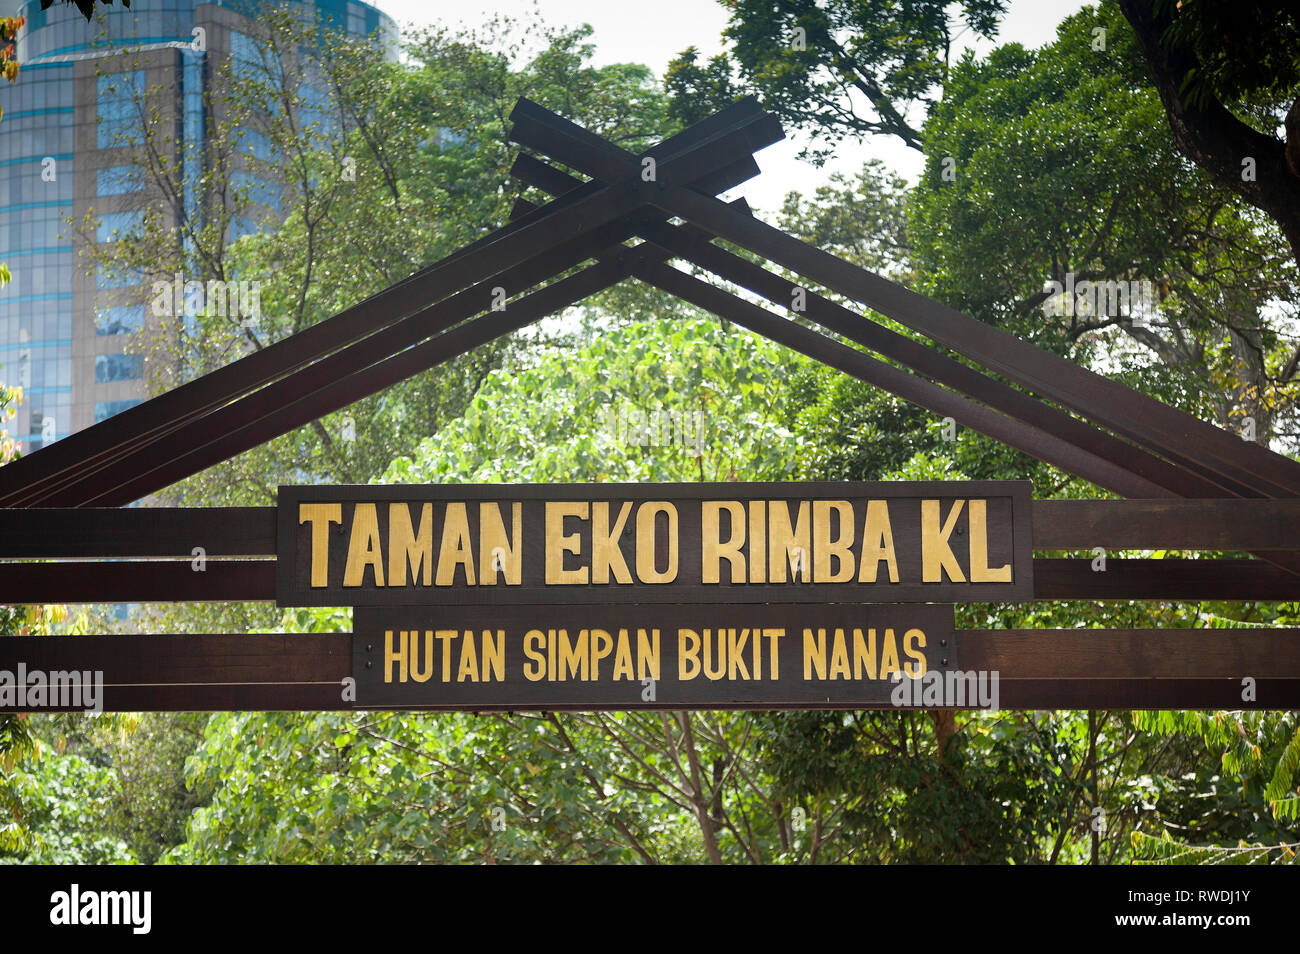 Taman Eko Rimba KL, Kuala Lumpar eco park in the heart of the city, Bukit Nanas, tree canopy walkway Stock Photo